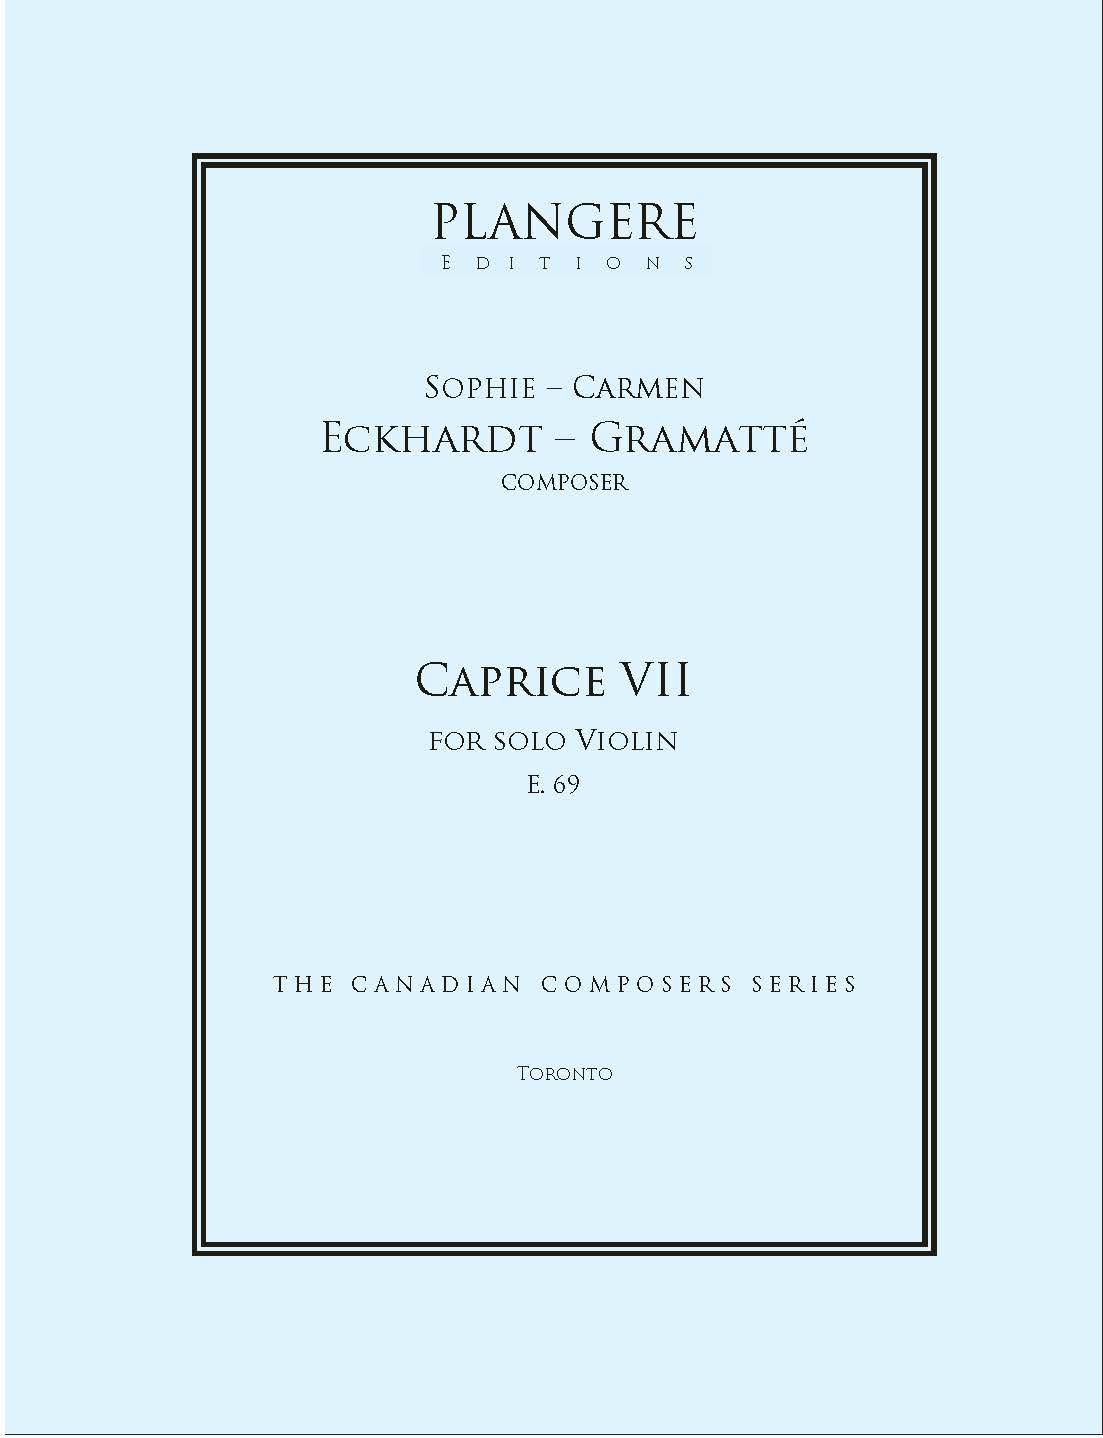 Caprice V for solo Violin  E. 64